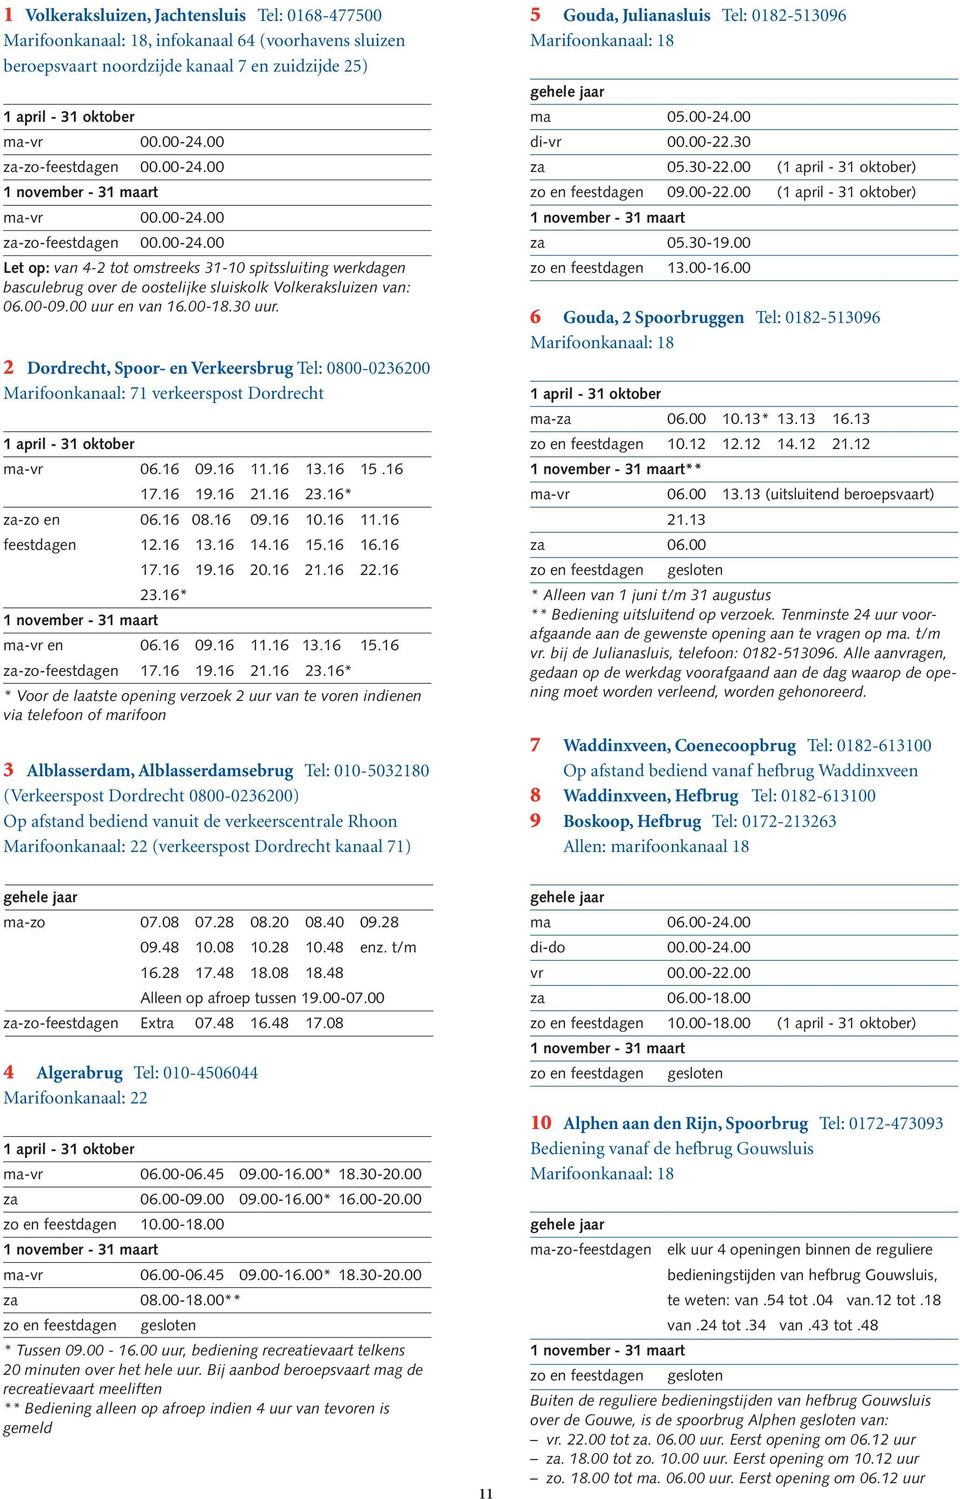 2 Dordrecht, Spoor- en Verkeersbrug Tel: 0800-0236200 Marifoonkanaal: 71 verkeerspost Dordrecht ma-vr 06.16 09.16 11.16 13.16 15.16 17.16 19.16 21.16 23.16* za-zo en 06.16 08.16 09.16 10.16 11.16 feestdagen 12.